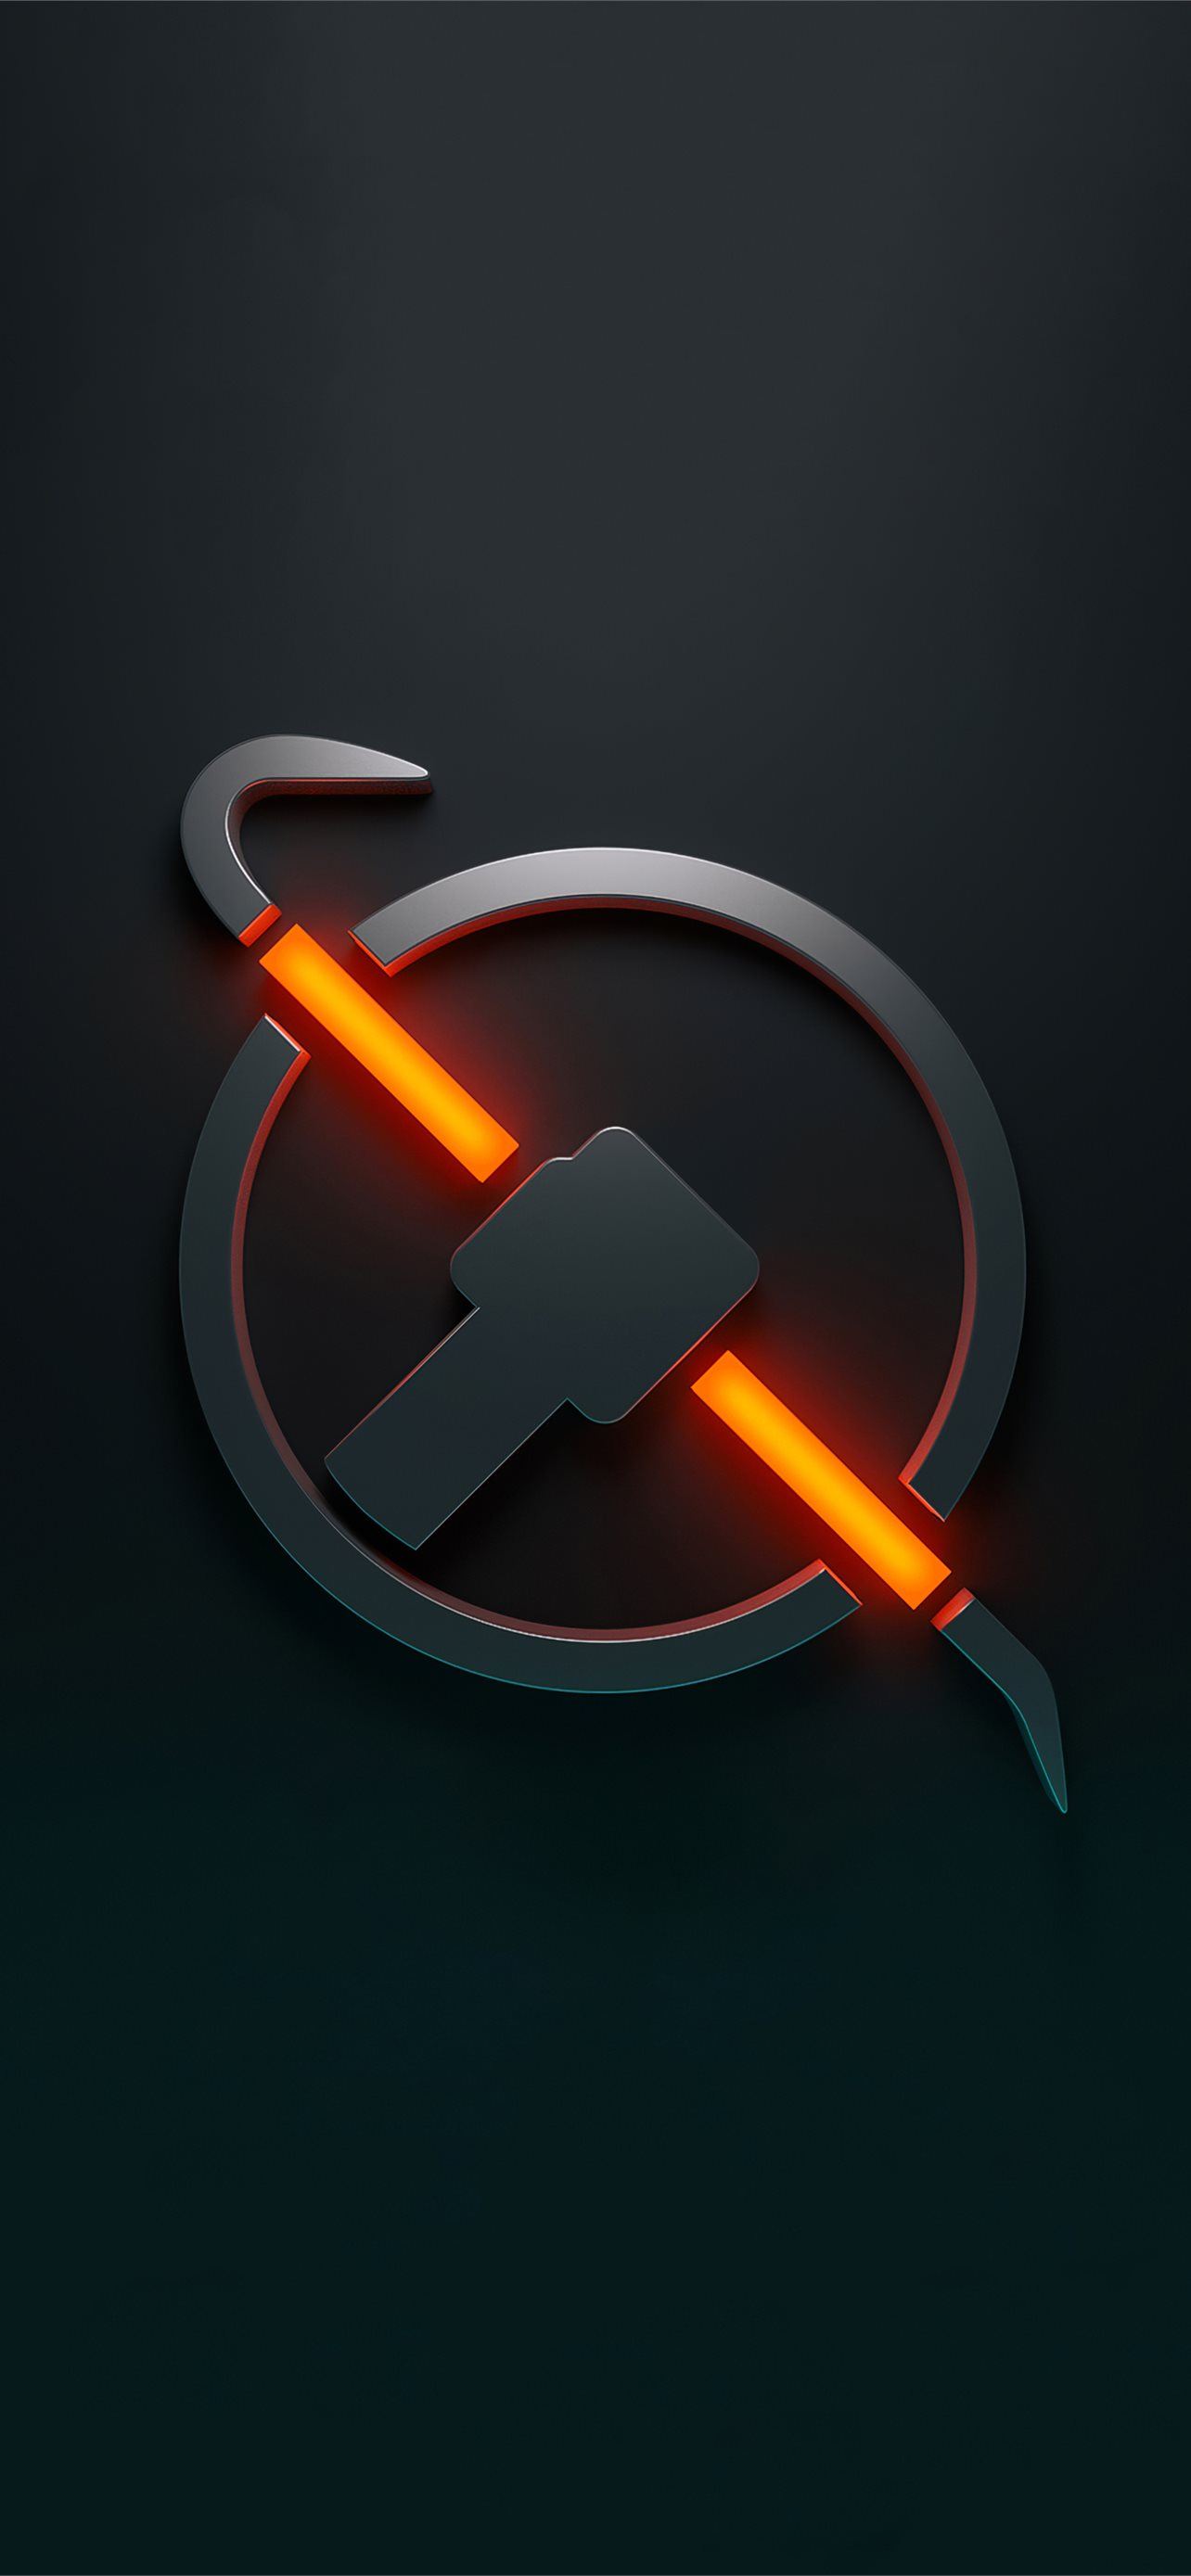 Half Life Logo là biểu tượng đầy sức hút với những fan hâm mộ game thủ. Với thiết kế độc đáo và đặc trưng, hãy xem qua hình ảnh liên quan để thấy được tầm quan trọng của nó trong cộng đồng game thủ.